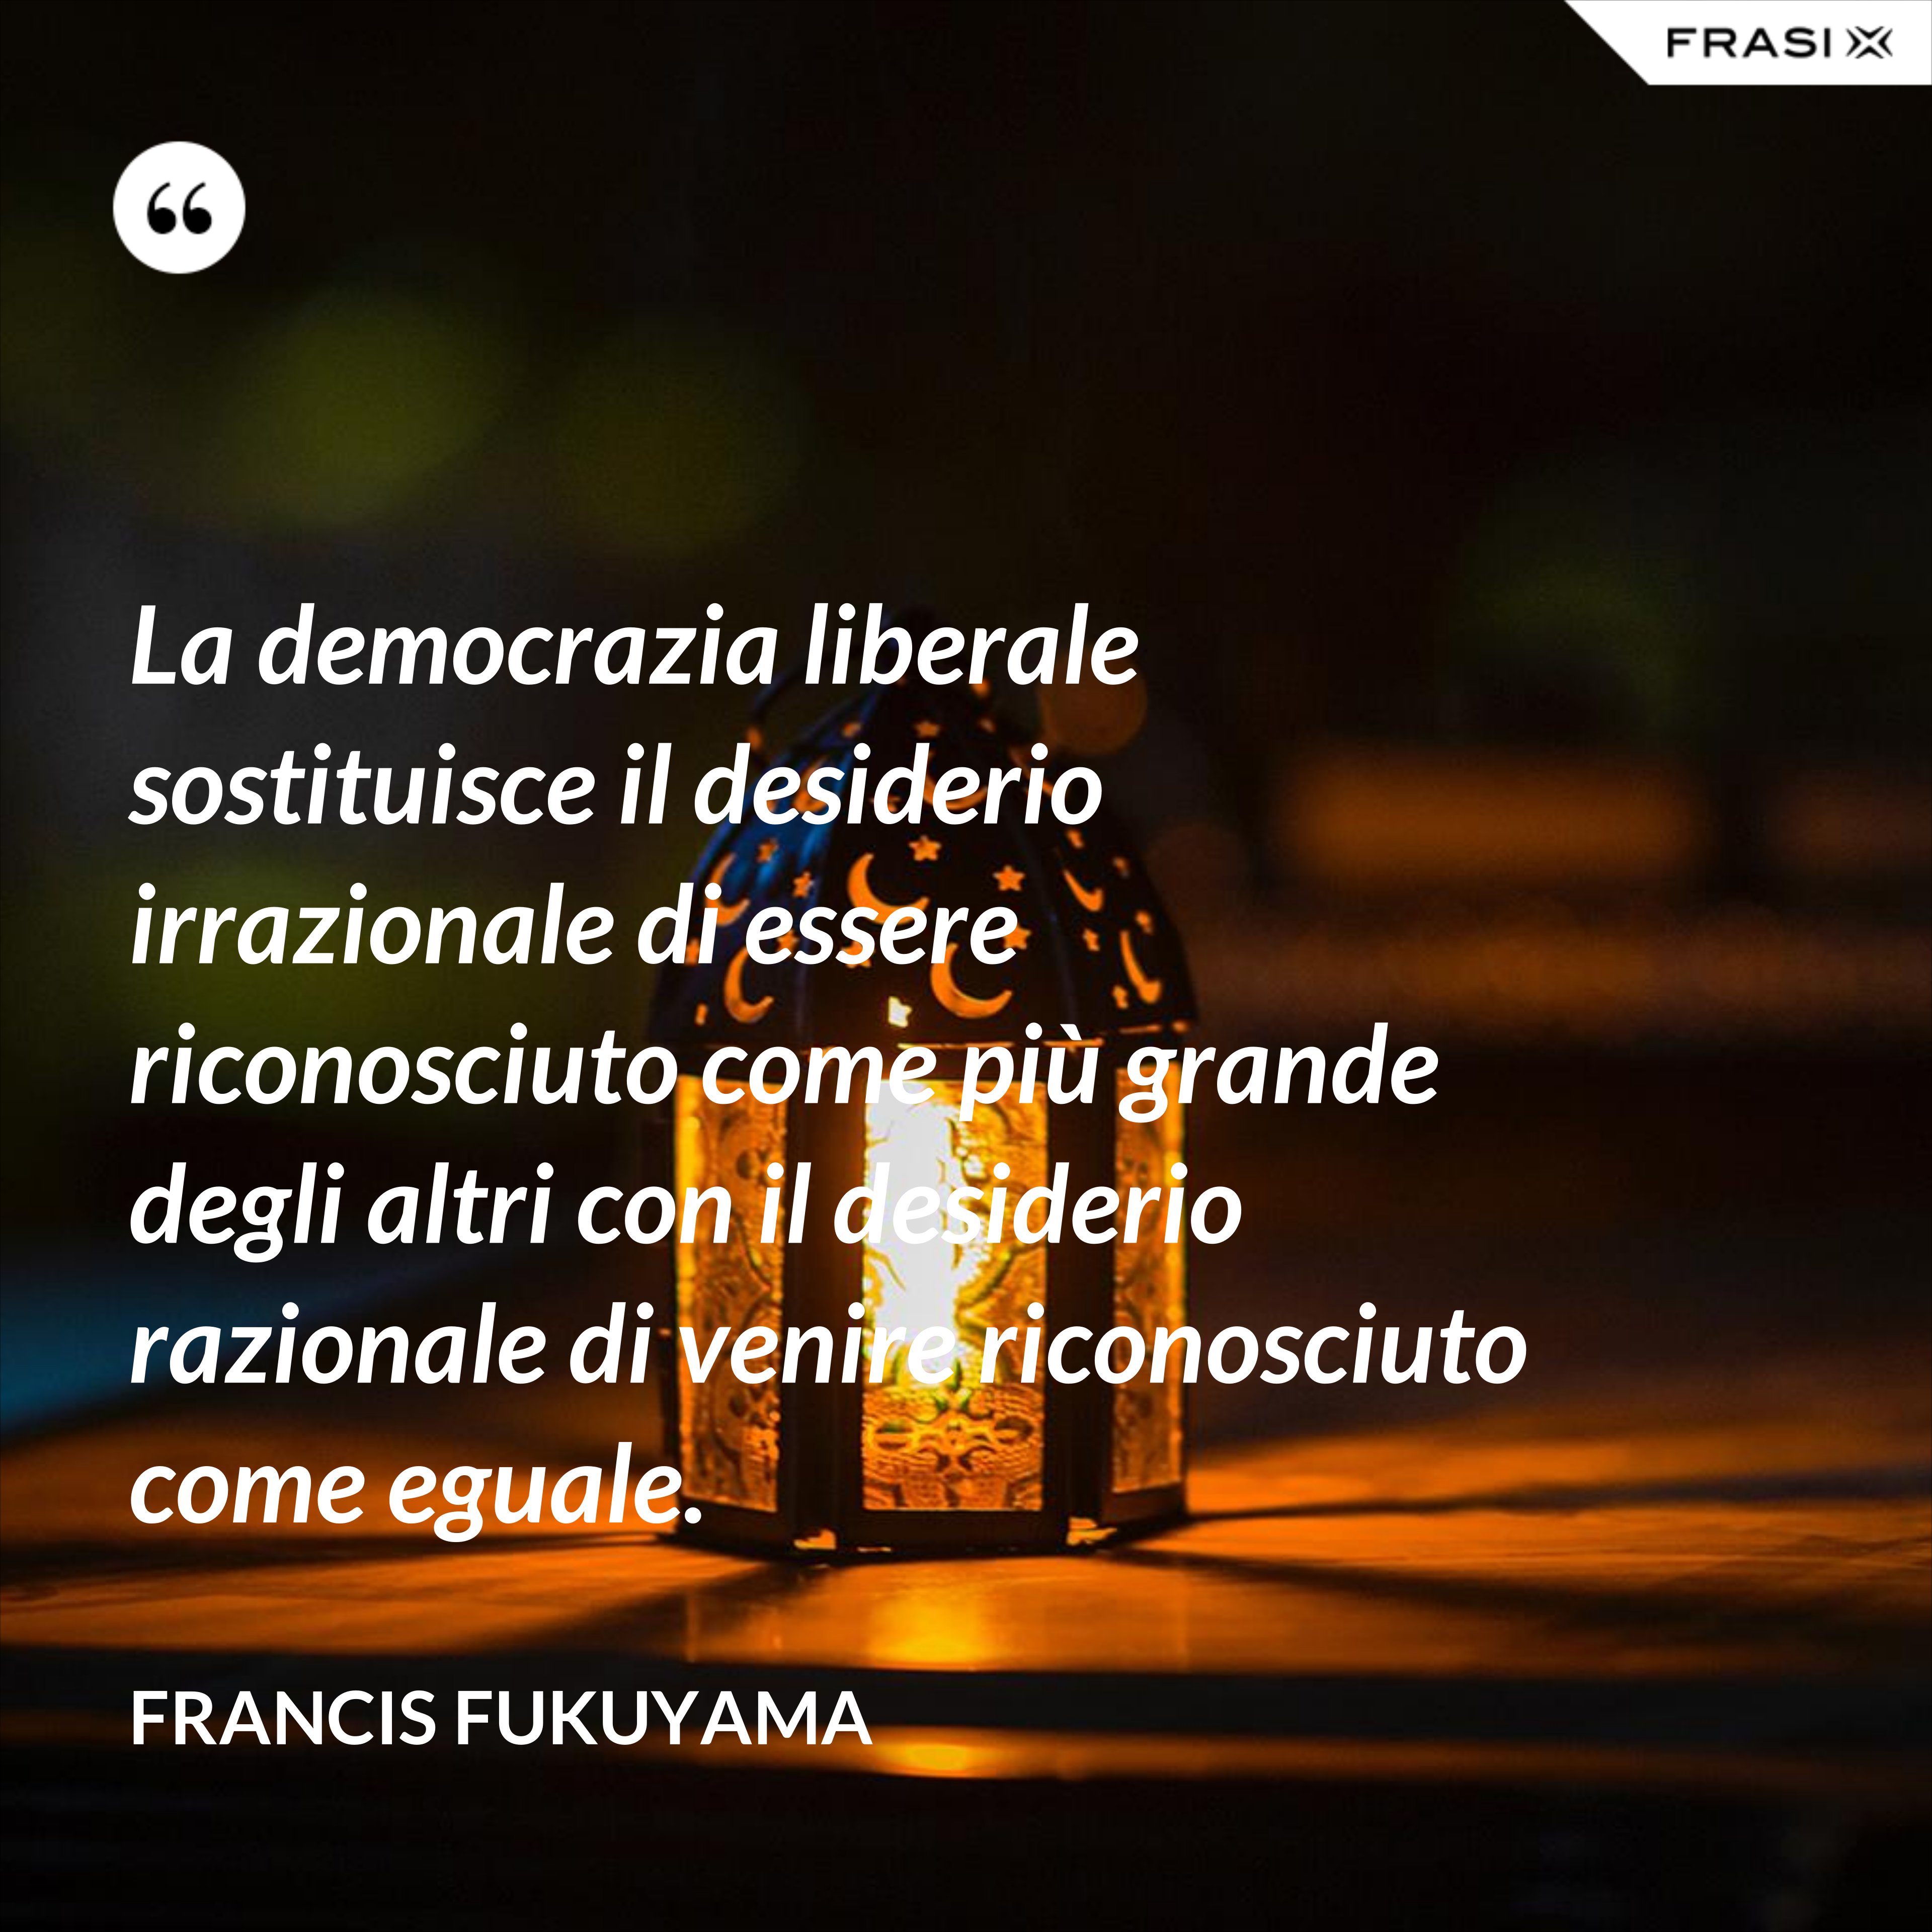 La democrazia liberale sostituisce il desiderio irrazionale di essere riconosciuto come più grande degli altri con il desiderio razionale di venire riconosciuto come eguale. - Francis Fukuyama